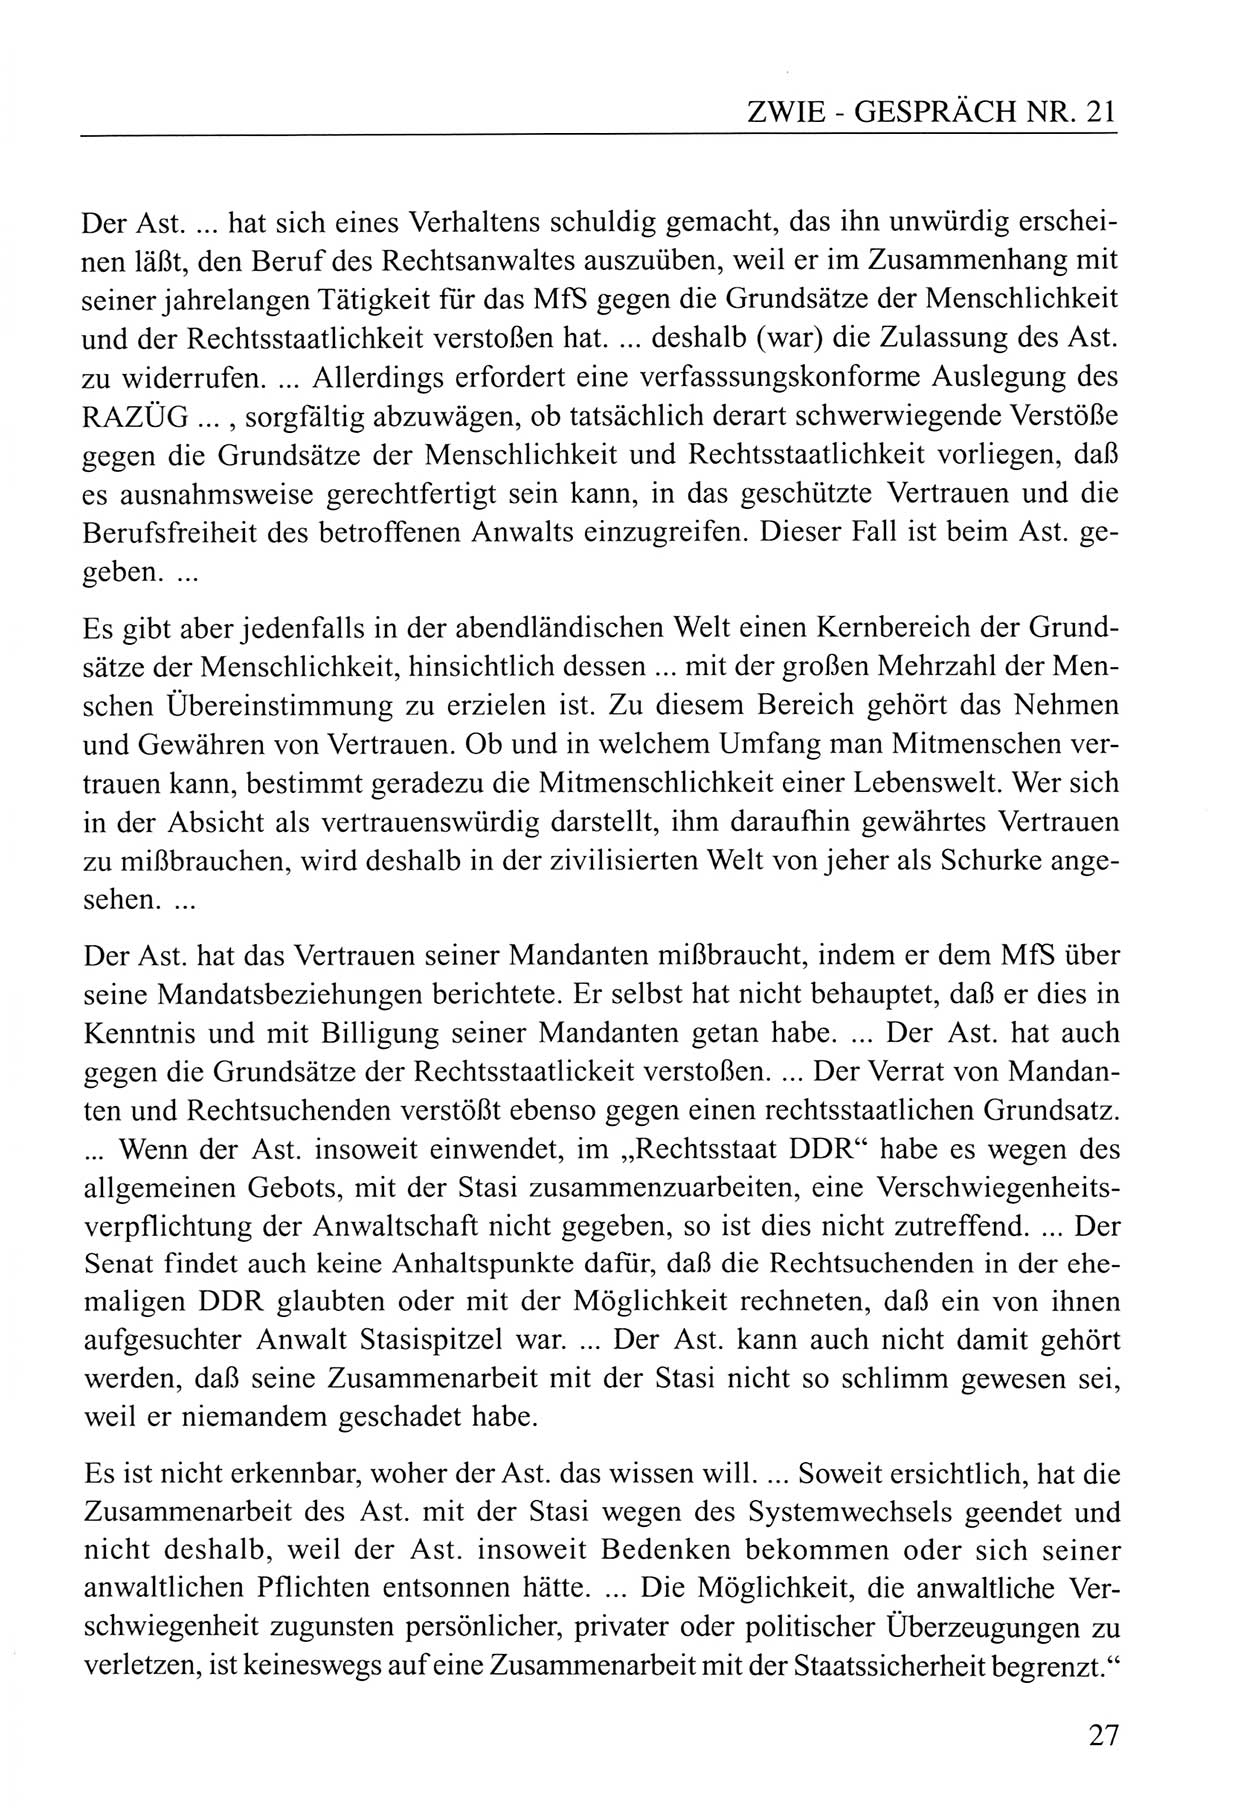 Zwie-Gespräch, Beiträge zum Umgang mit der Staatssicherheits-Vergangenheit [Deutsche Demokratische Republik (DDR)], Ausgabe Nr. 21, Berlin 1994, Seite 27 (Zwie-Gespr. Ausg. 21 1994, S. 27)